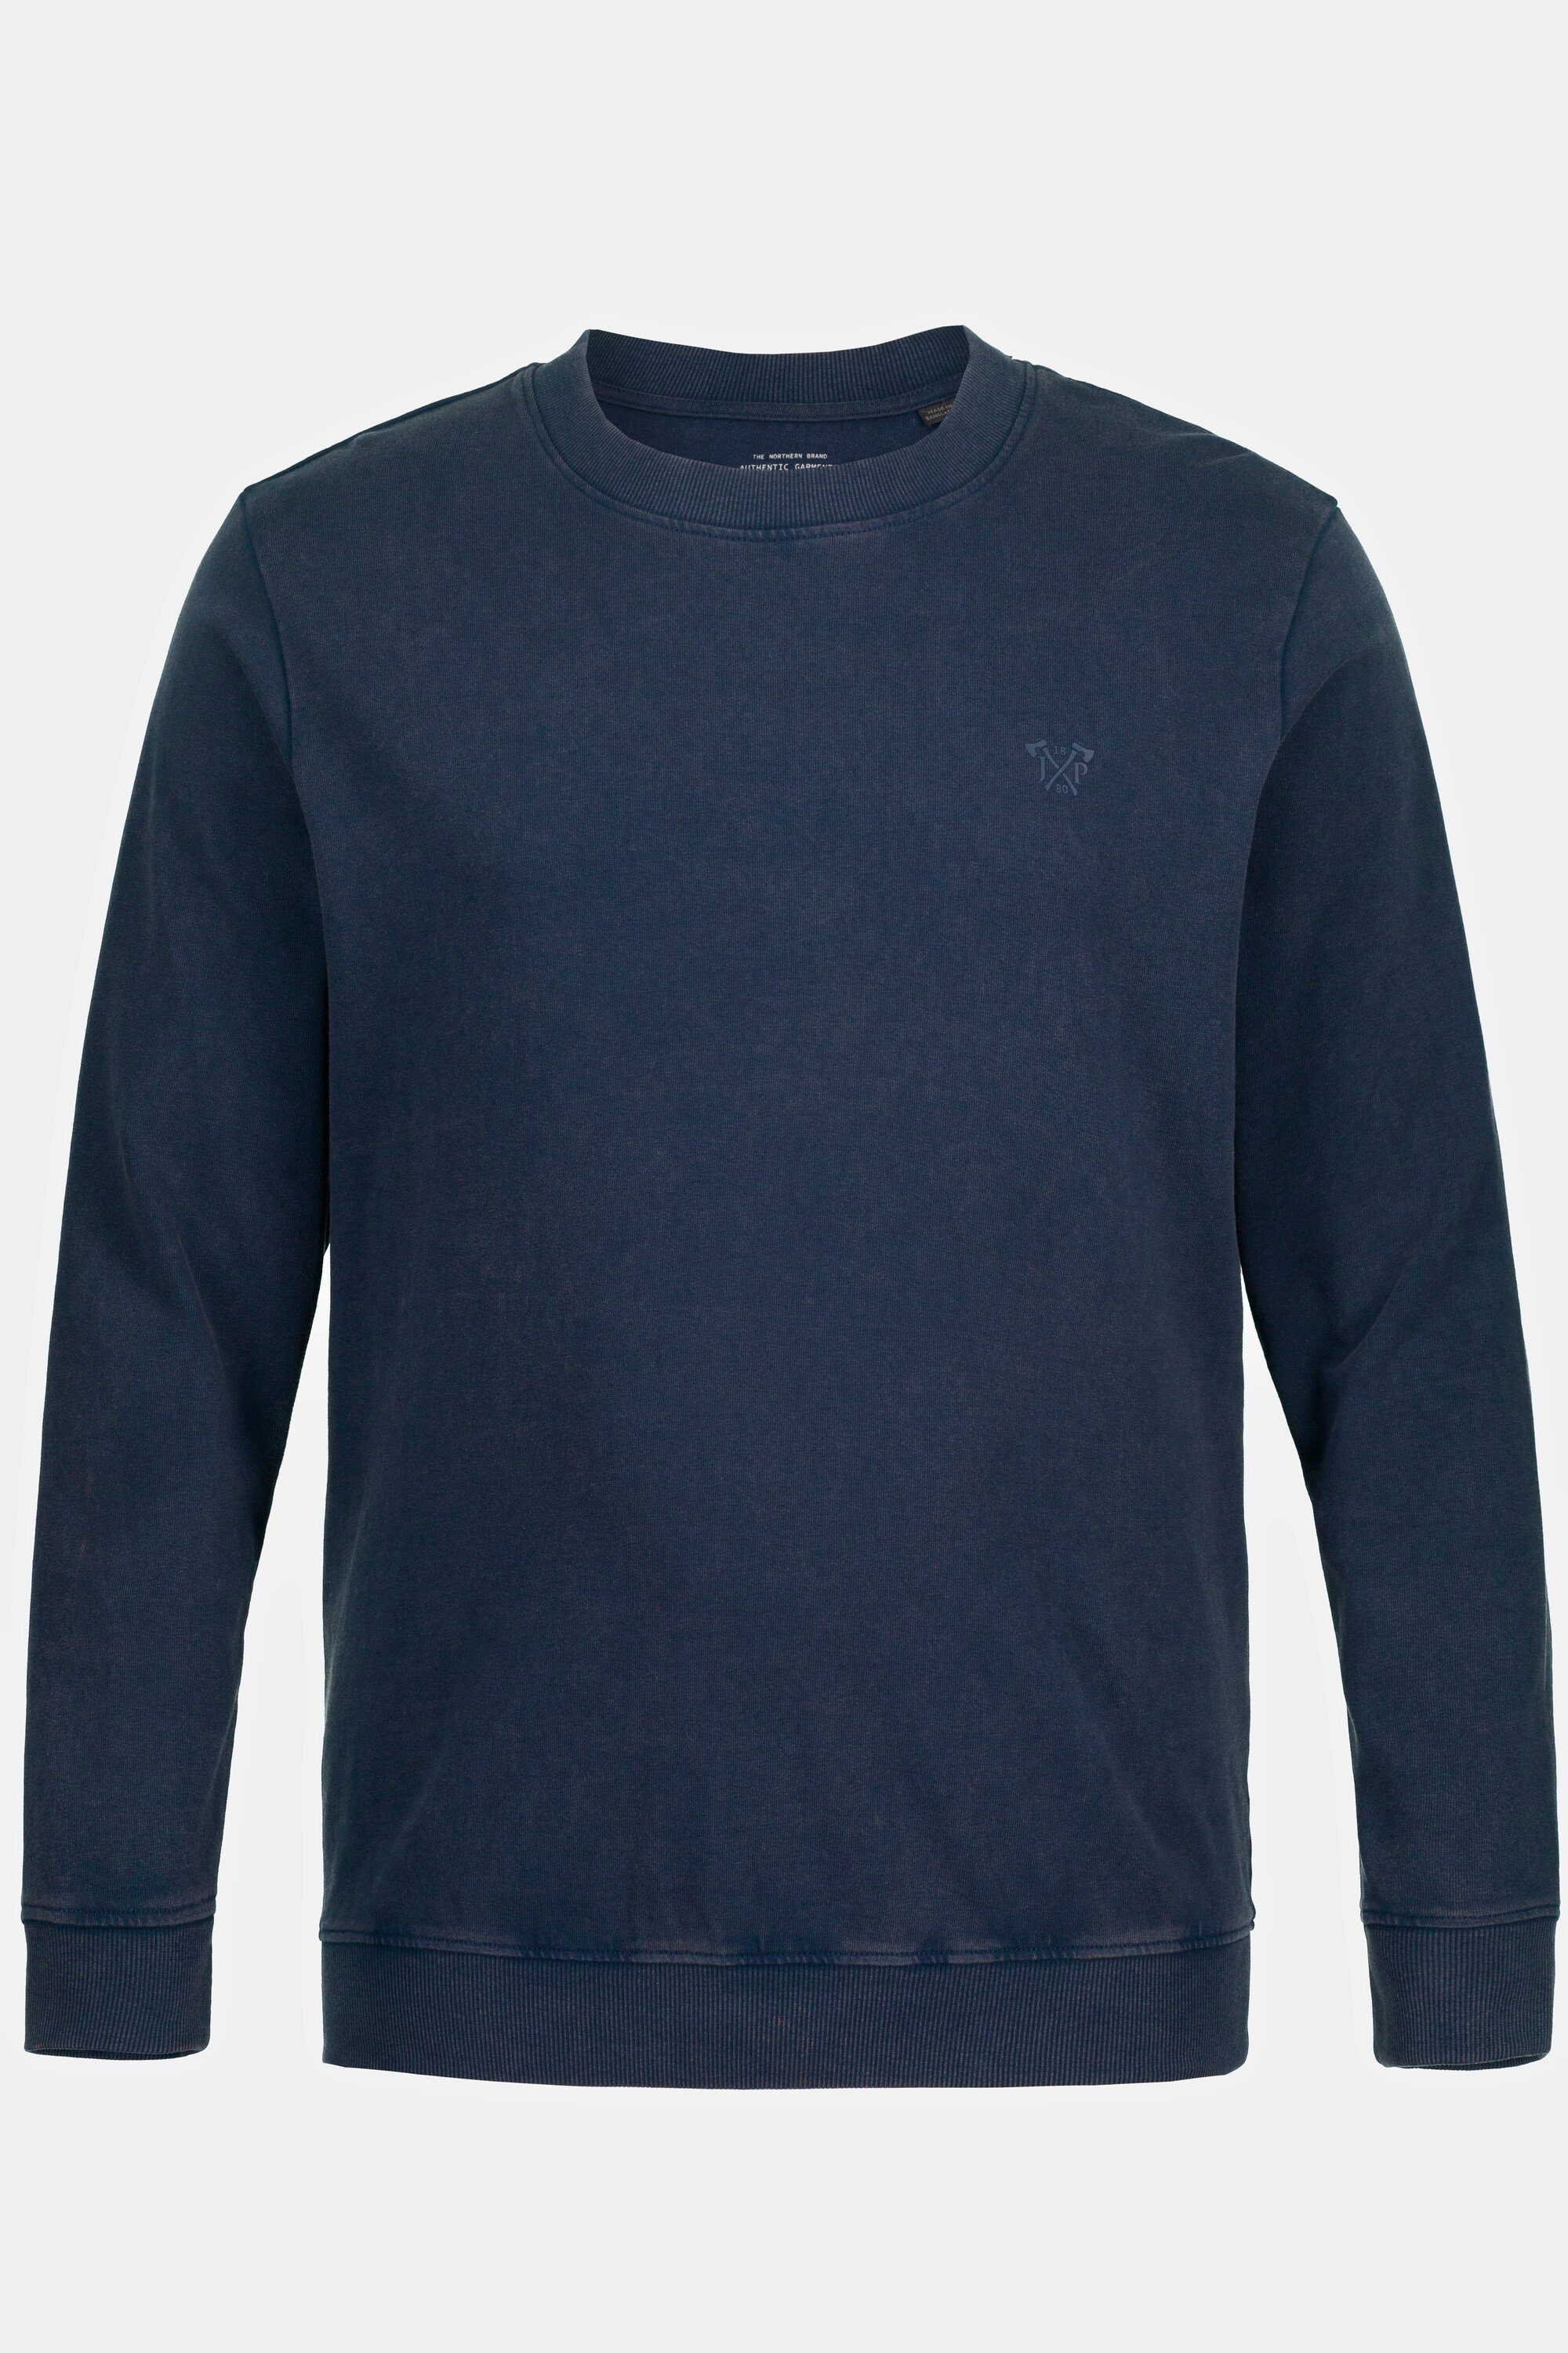 mattes leichte Qualität T-Shirt washed JP1880 Bauchfit nachtblau Sweatshirt acid